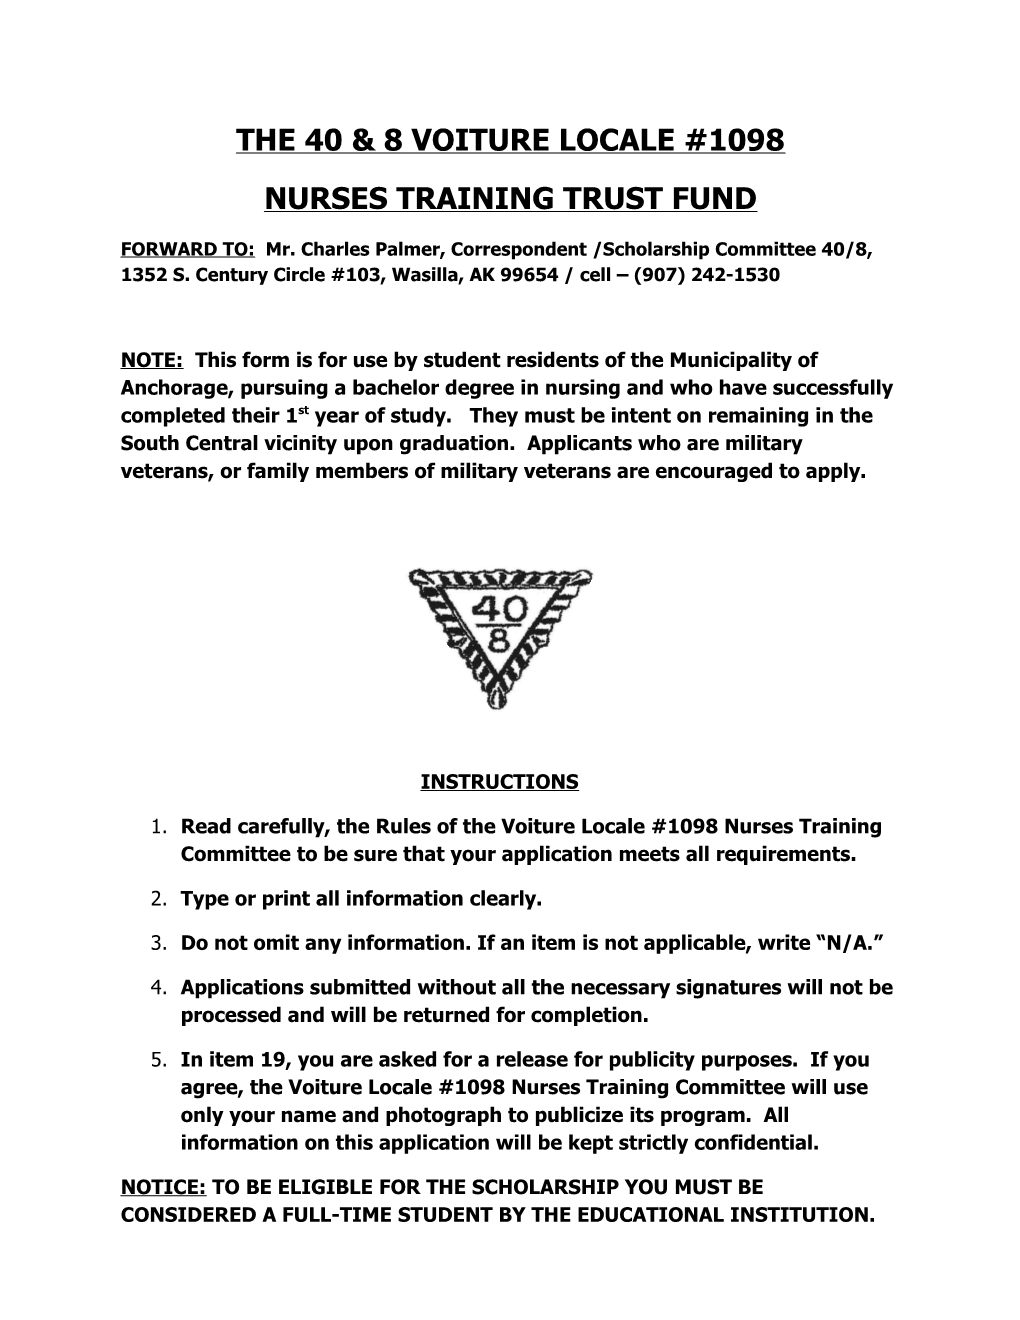 Nurses Training Trust Fund